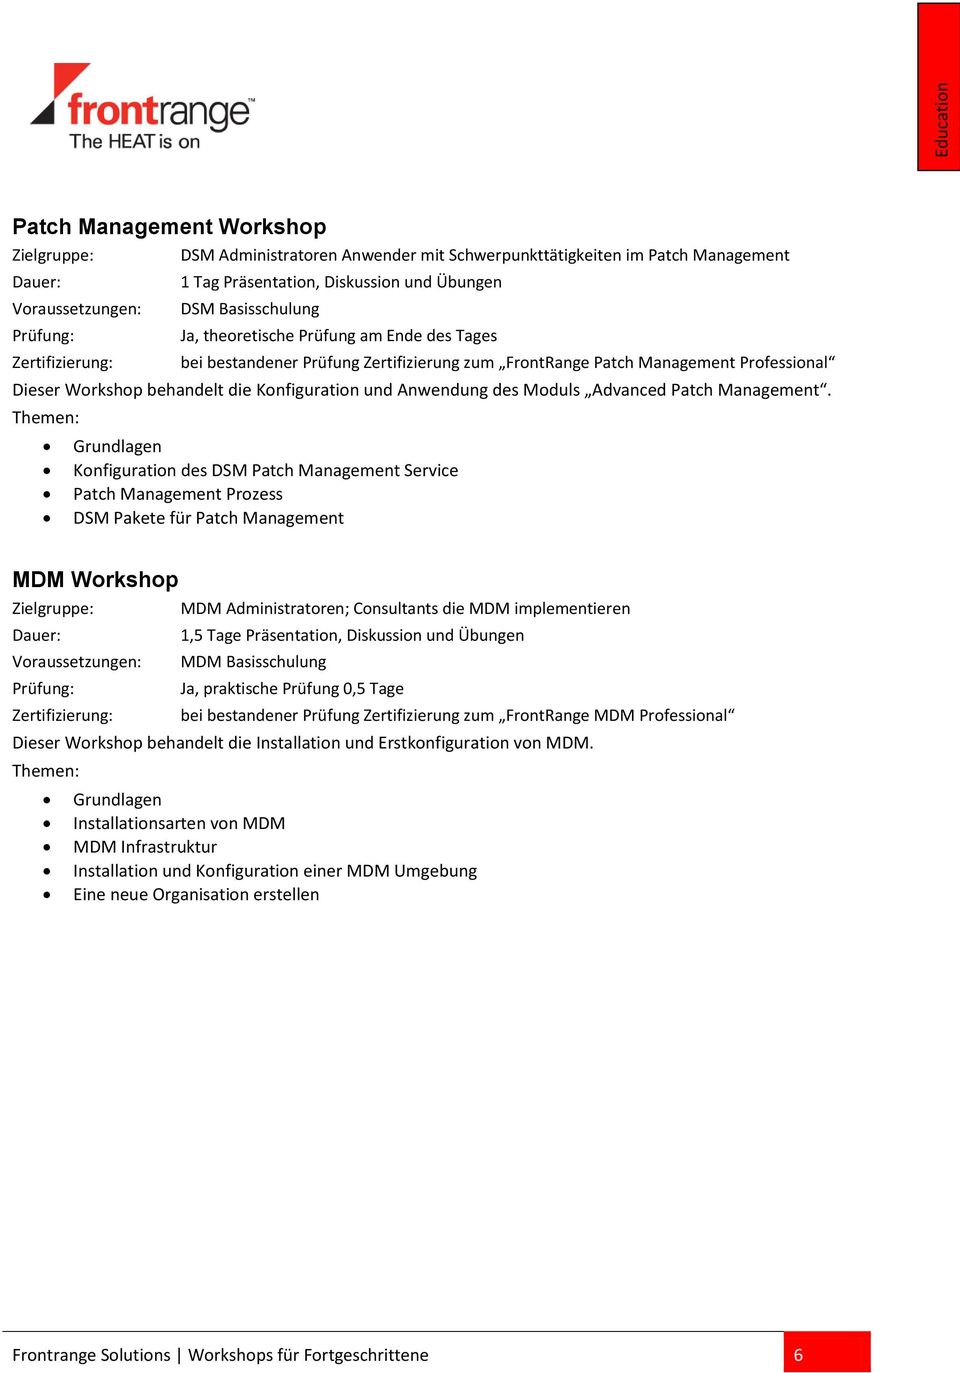 Grundlagen Konfiguration des DSM Patch Management Service Patch Management Prozess DSM Pakete für Patch Management MDM Workshop MDM Administratoren; Consultants die MDM implementieren 1,5 Tage